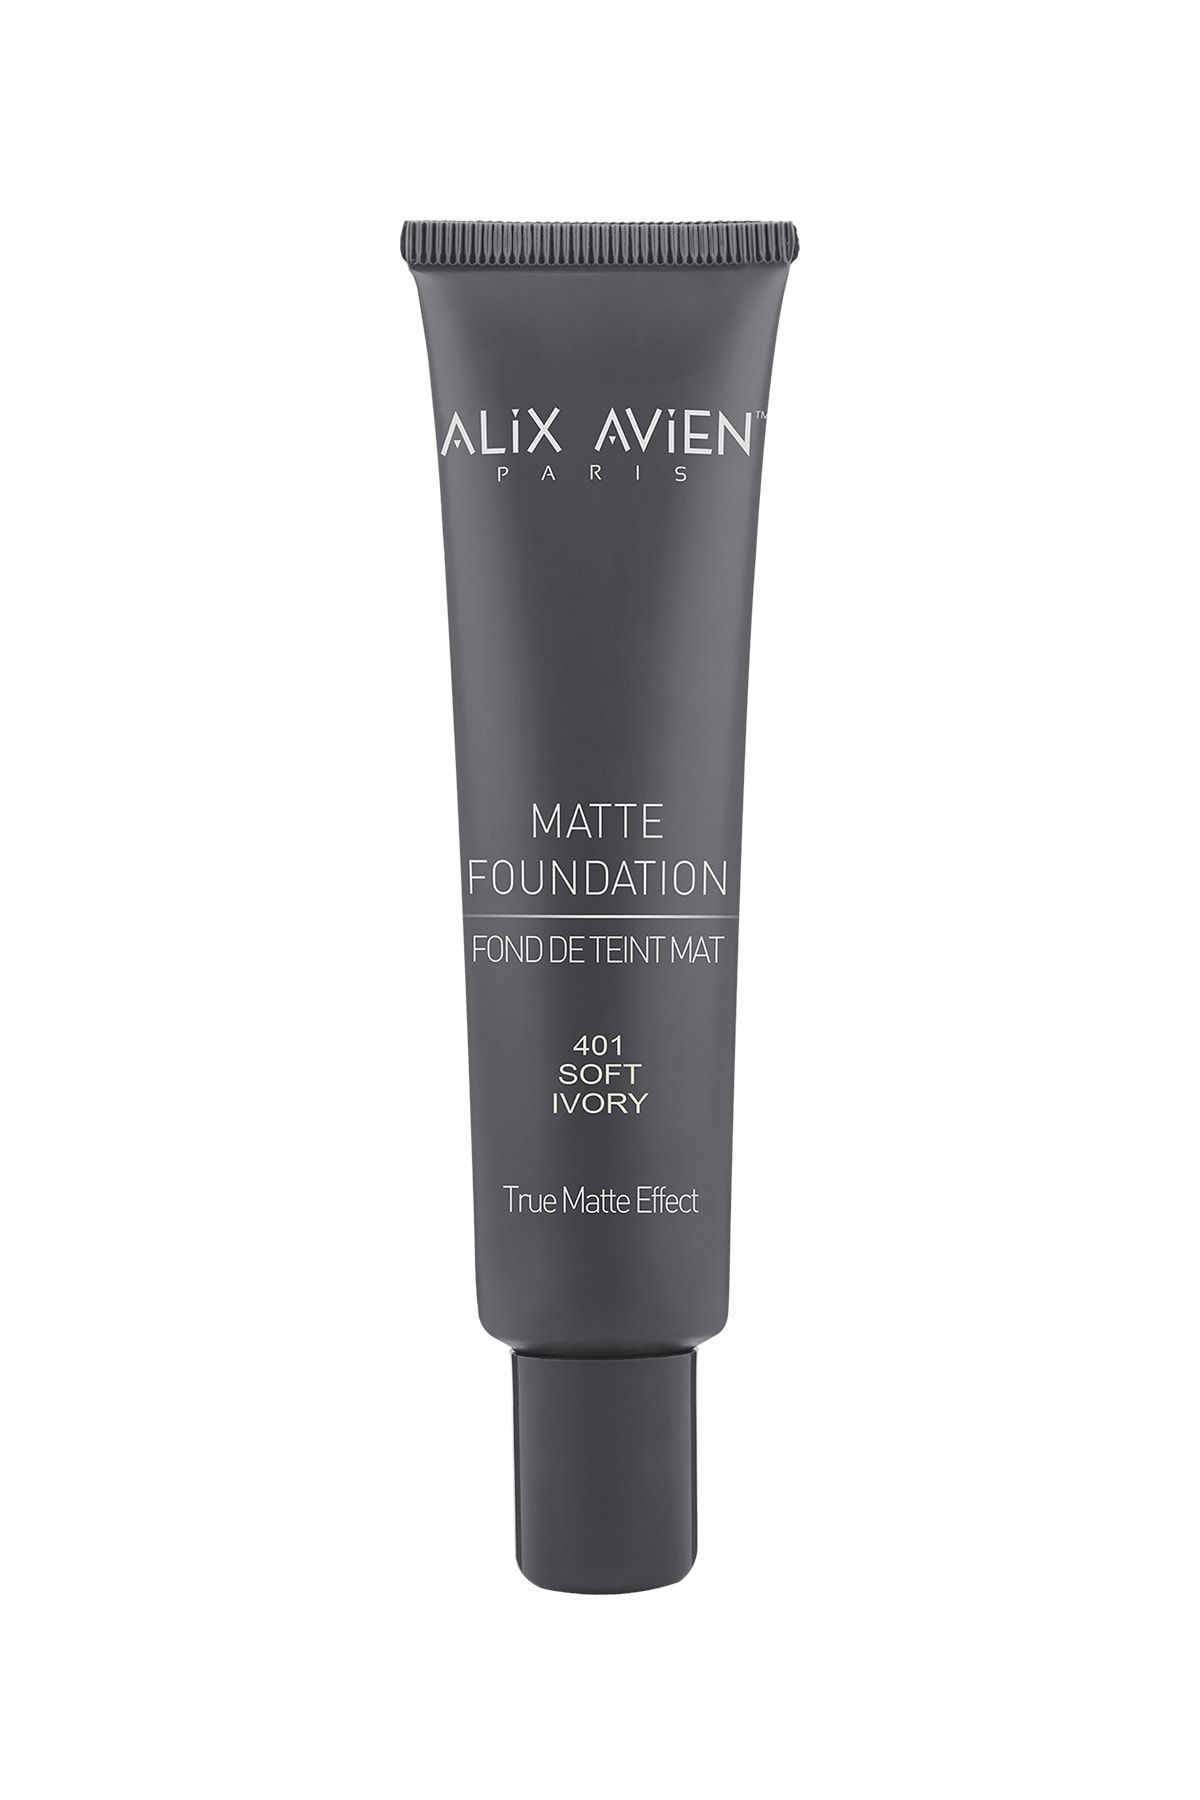 Alix Avien Mat Fondöten 401 Soft Ivory Yüksek Kapatıcı Uzun Süre Kalıcı Etki Matte Foundation 40 ml